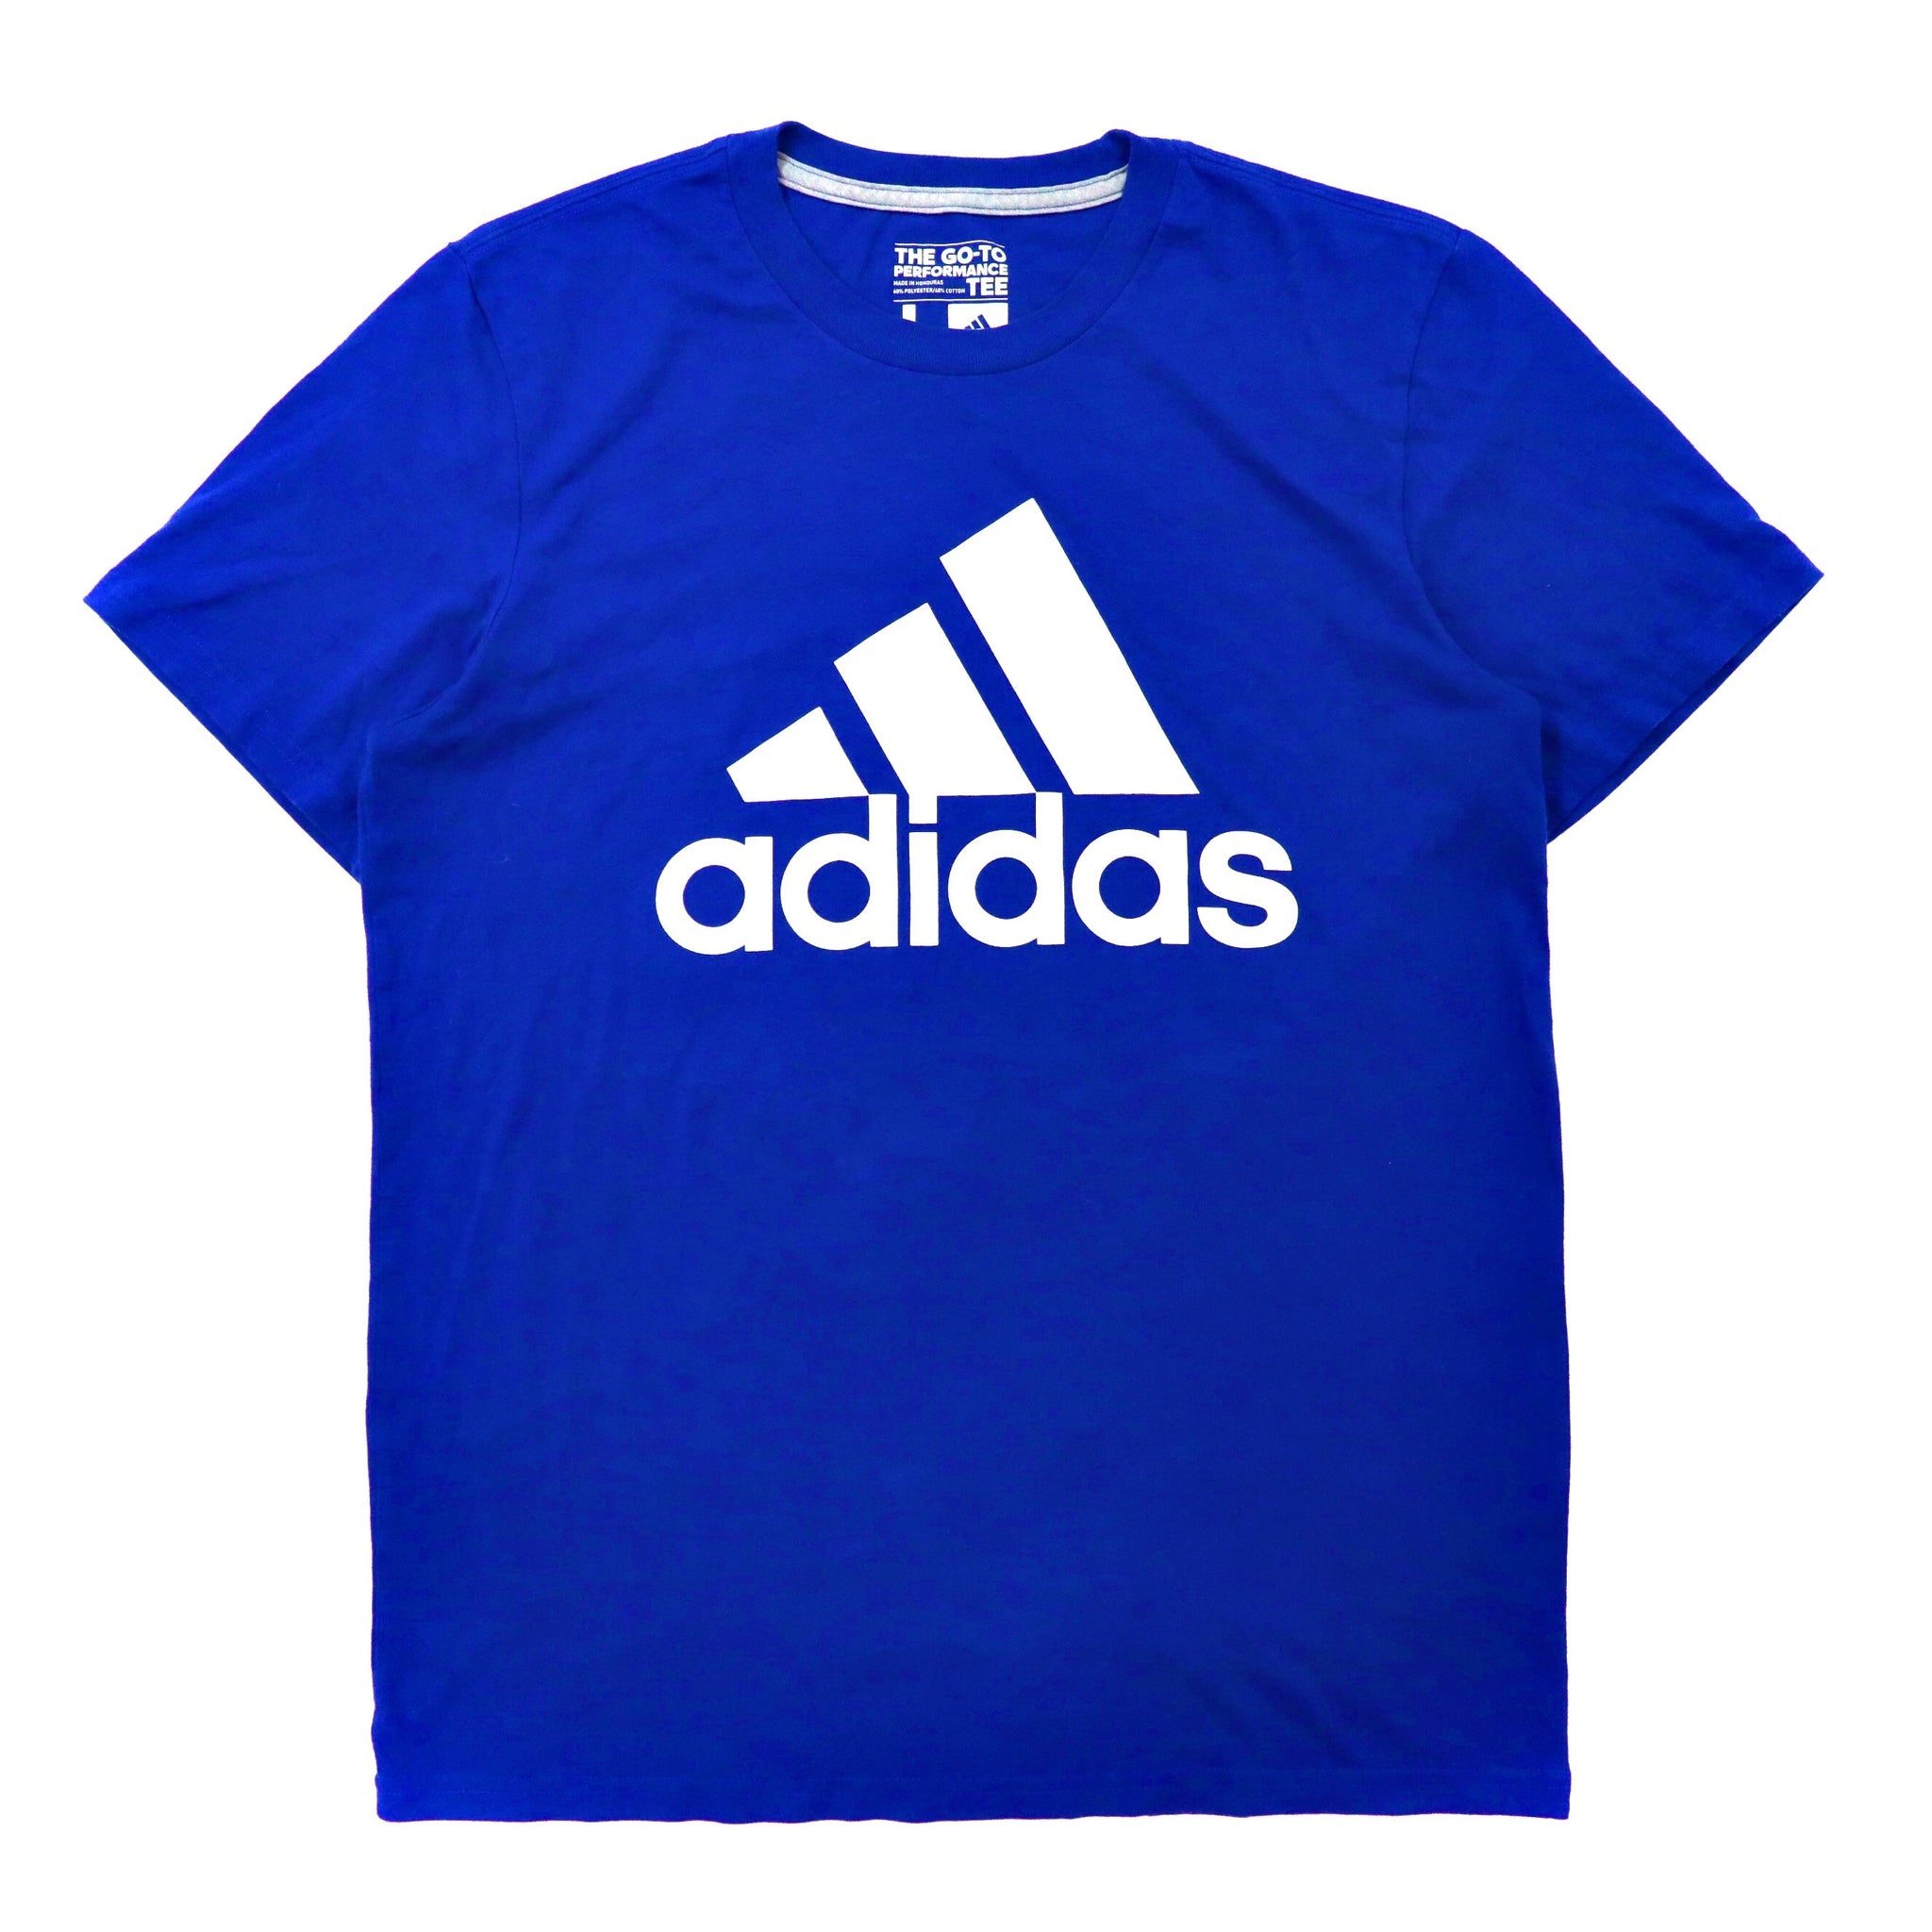 adidas ビッグロゴプリントTシャツ L ブルー コットン